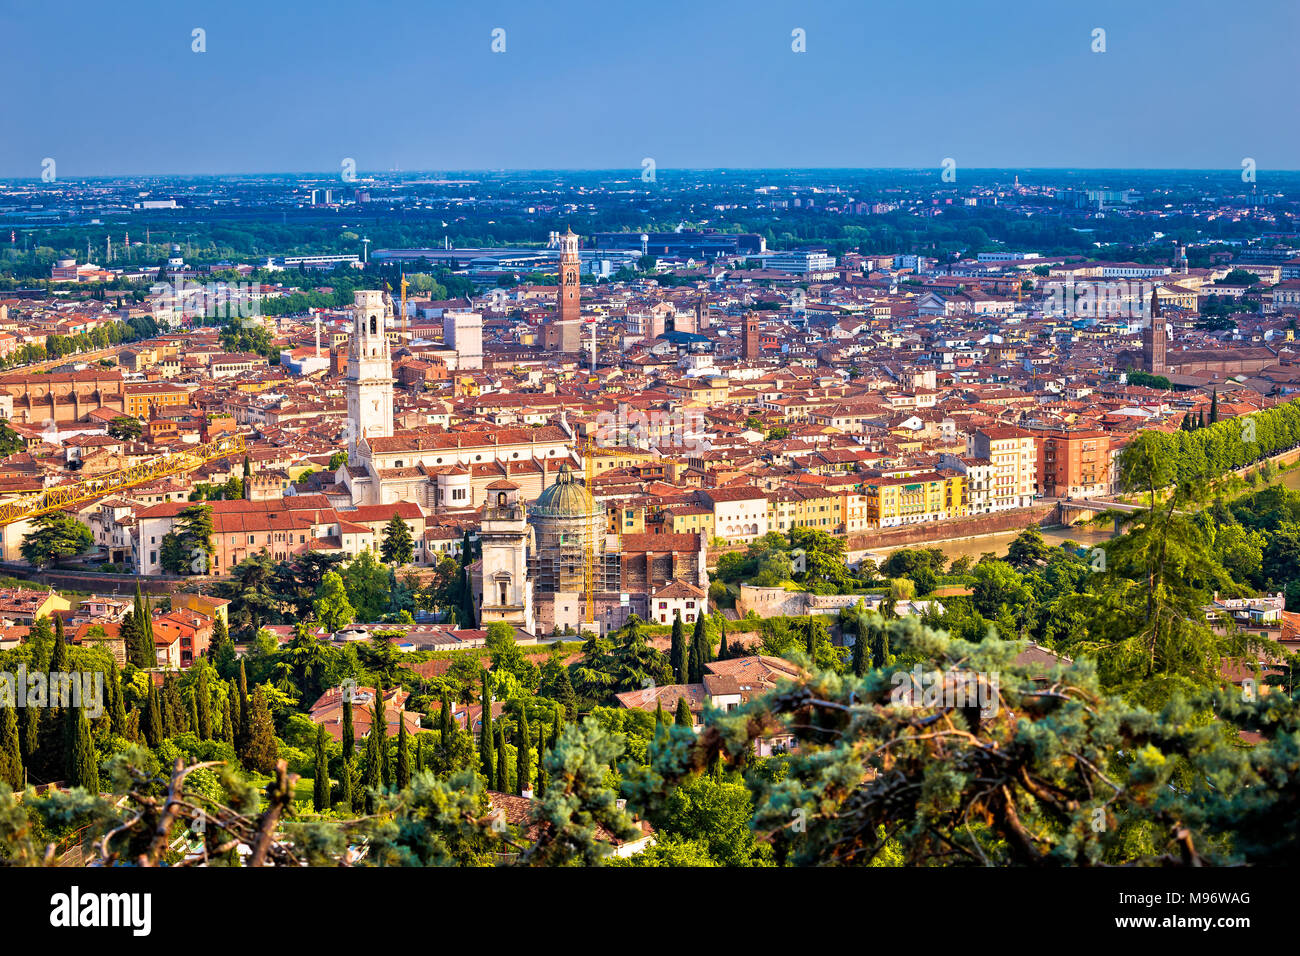 Città di Verona centro storico e il fiume Adige antenna vista panoramica, regione italiana Veneto Foto Stock